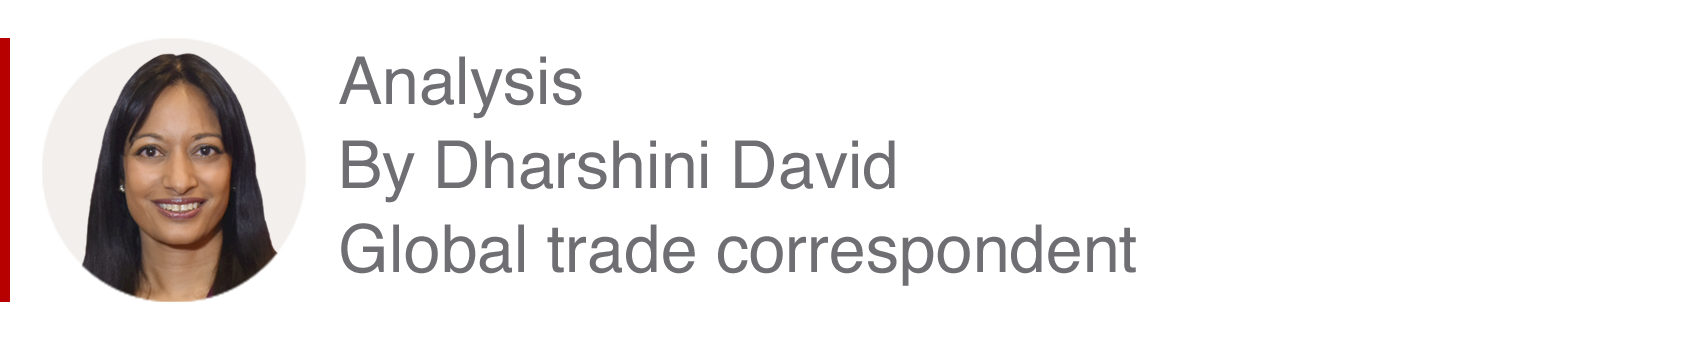 Аналитическая вставка Дхаршини Дэвида, корреспондента по международной торговле